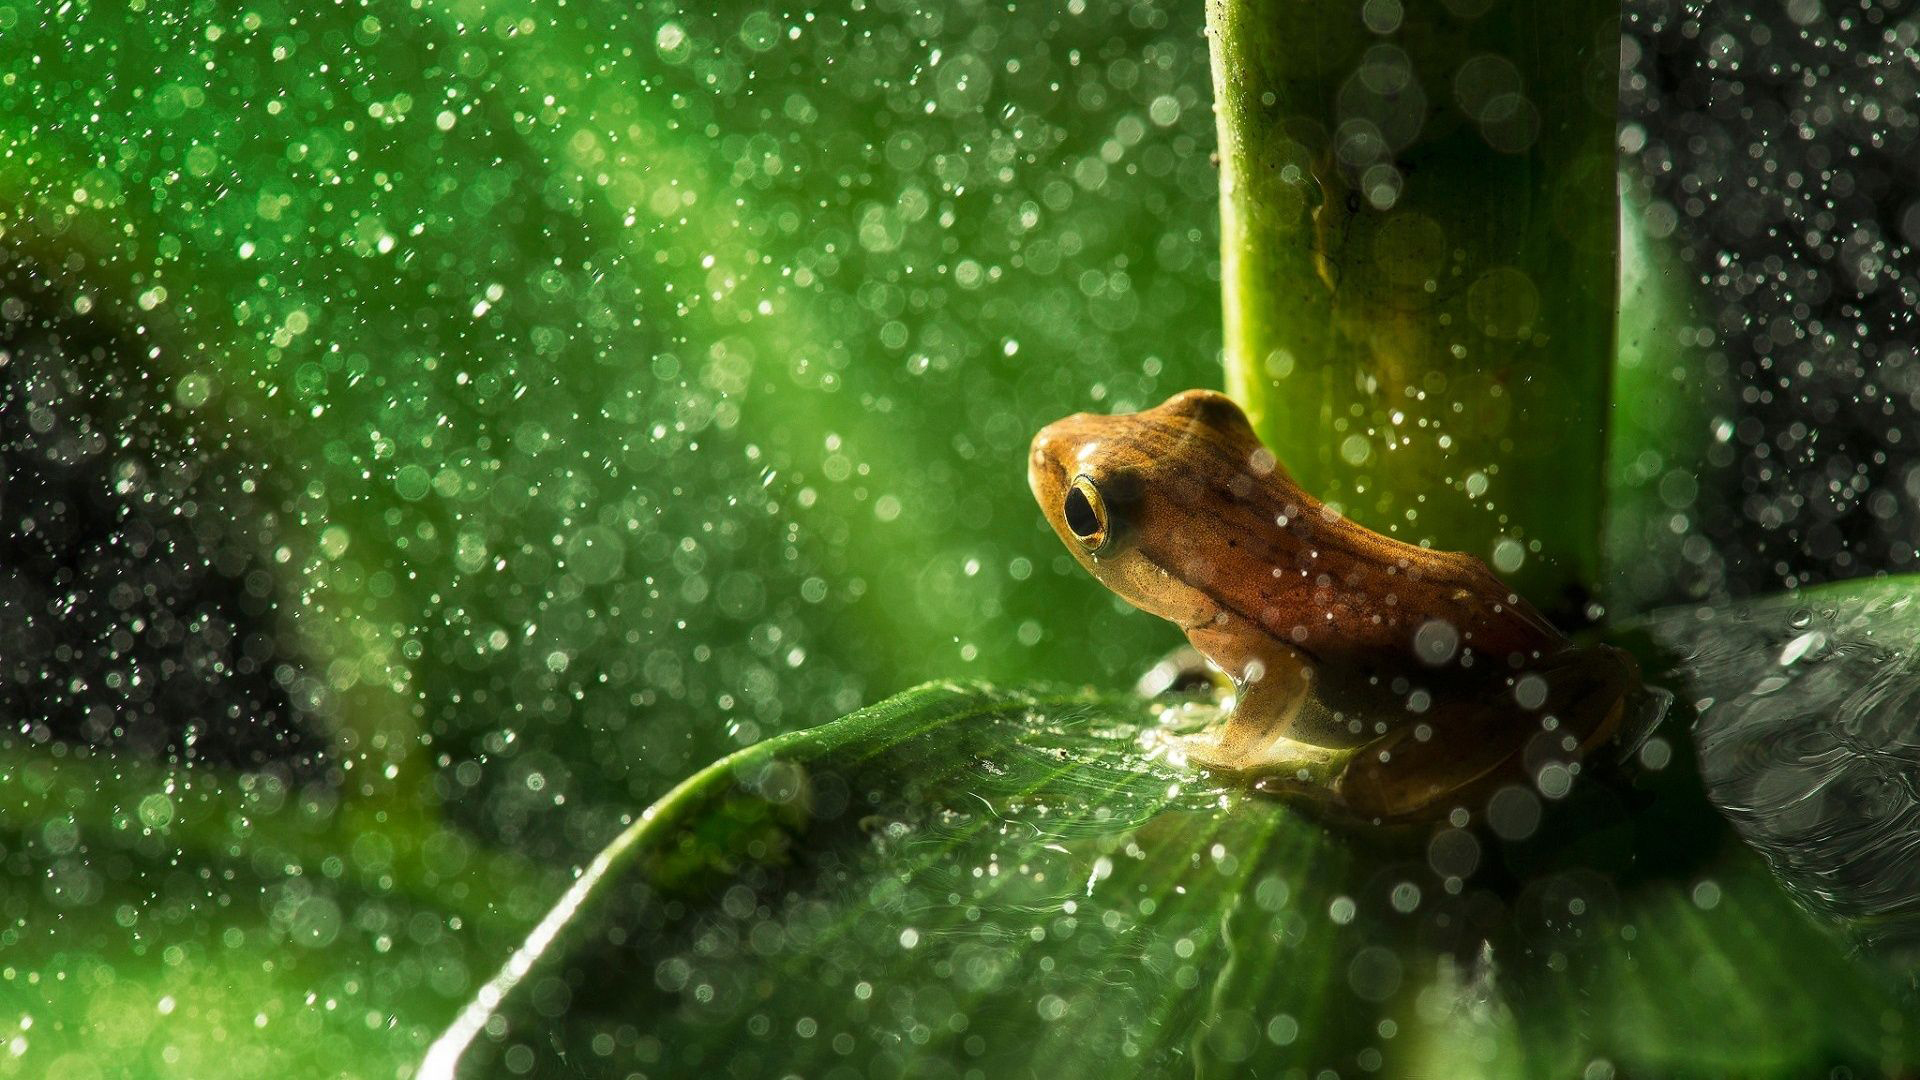 12714 Frog Wallpaper Images Stock Photos  Vectors  Shutterstock